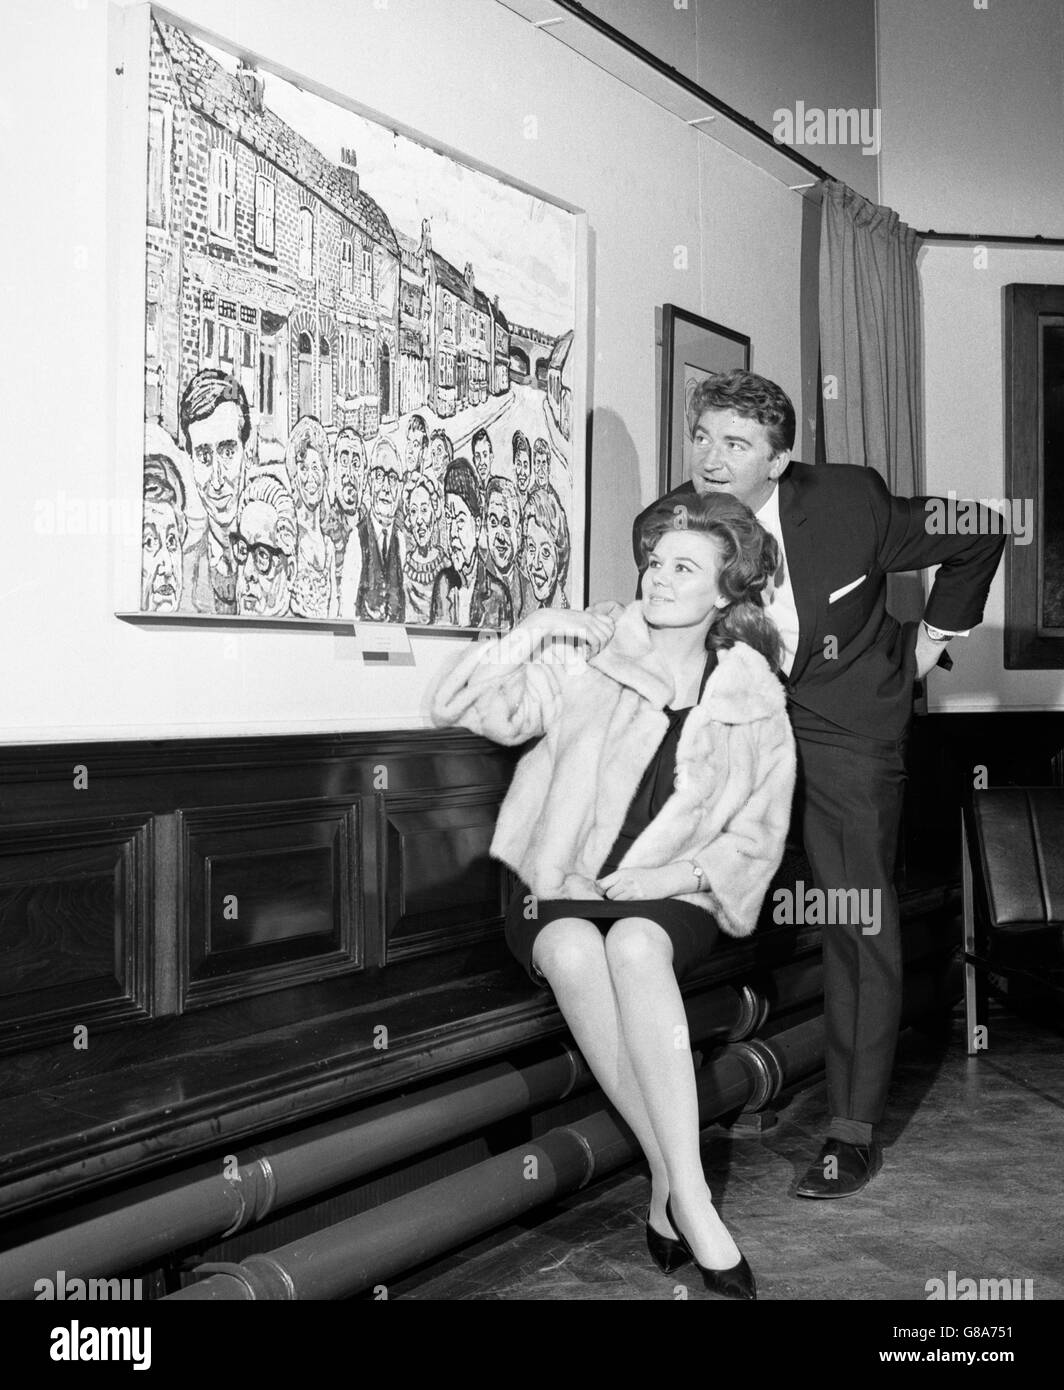 Sandra Gough et Peter Adamson, qui jouent Len Fairclough et Irma Barlow dans Coronation Street, étudient une peinture de personnages de la série de John Bratby, à la Whitworth Art Gallery de Manchester. Banque D'Images